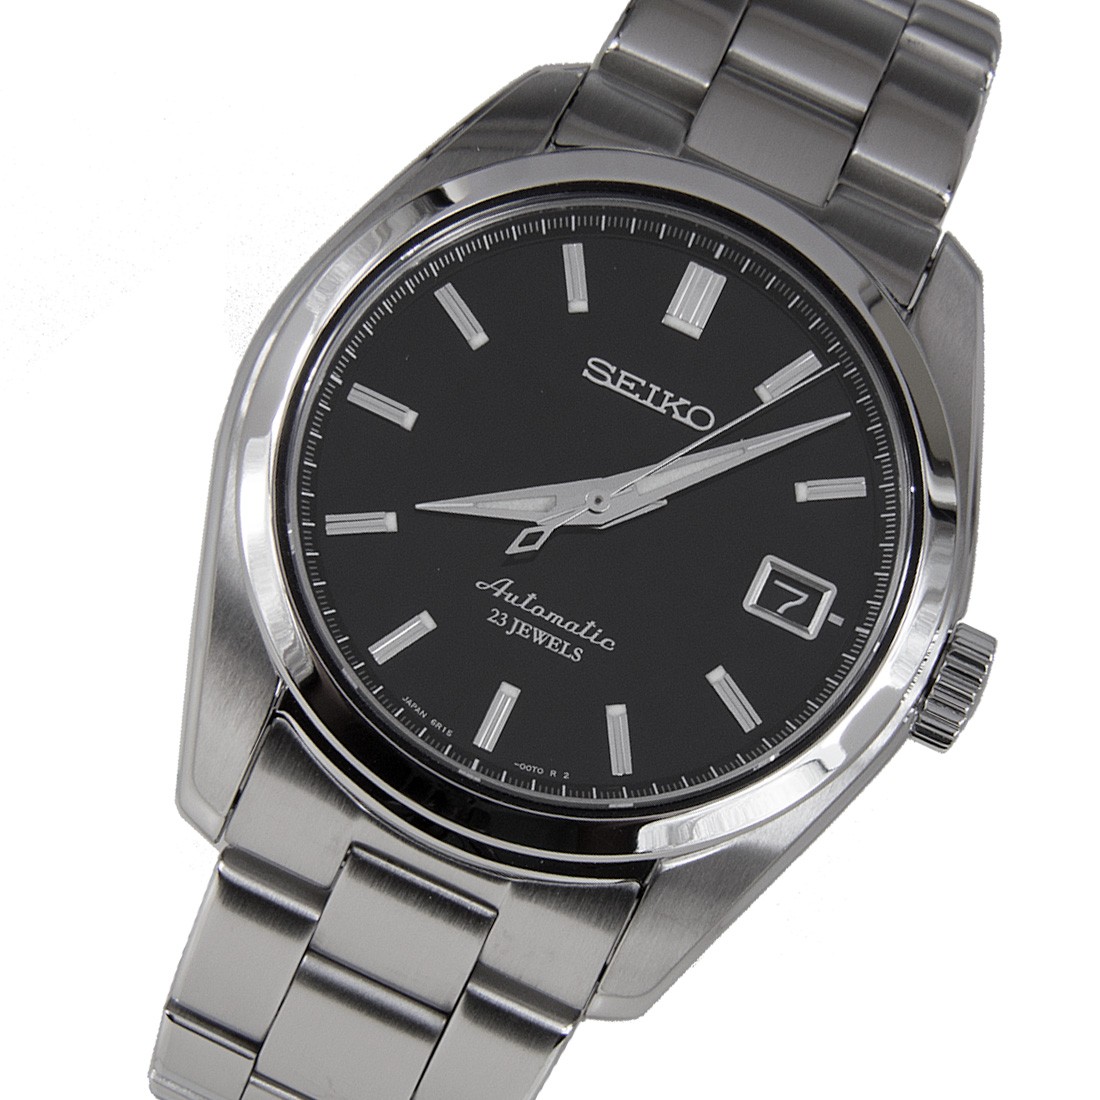 Seiko SARB035 Vs SARB033 | Automatic Watches For Men